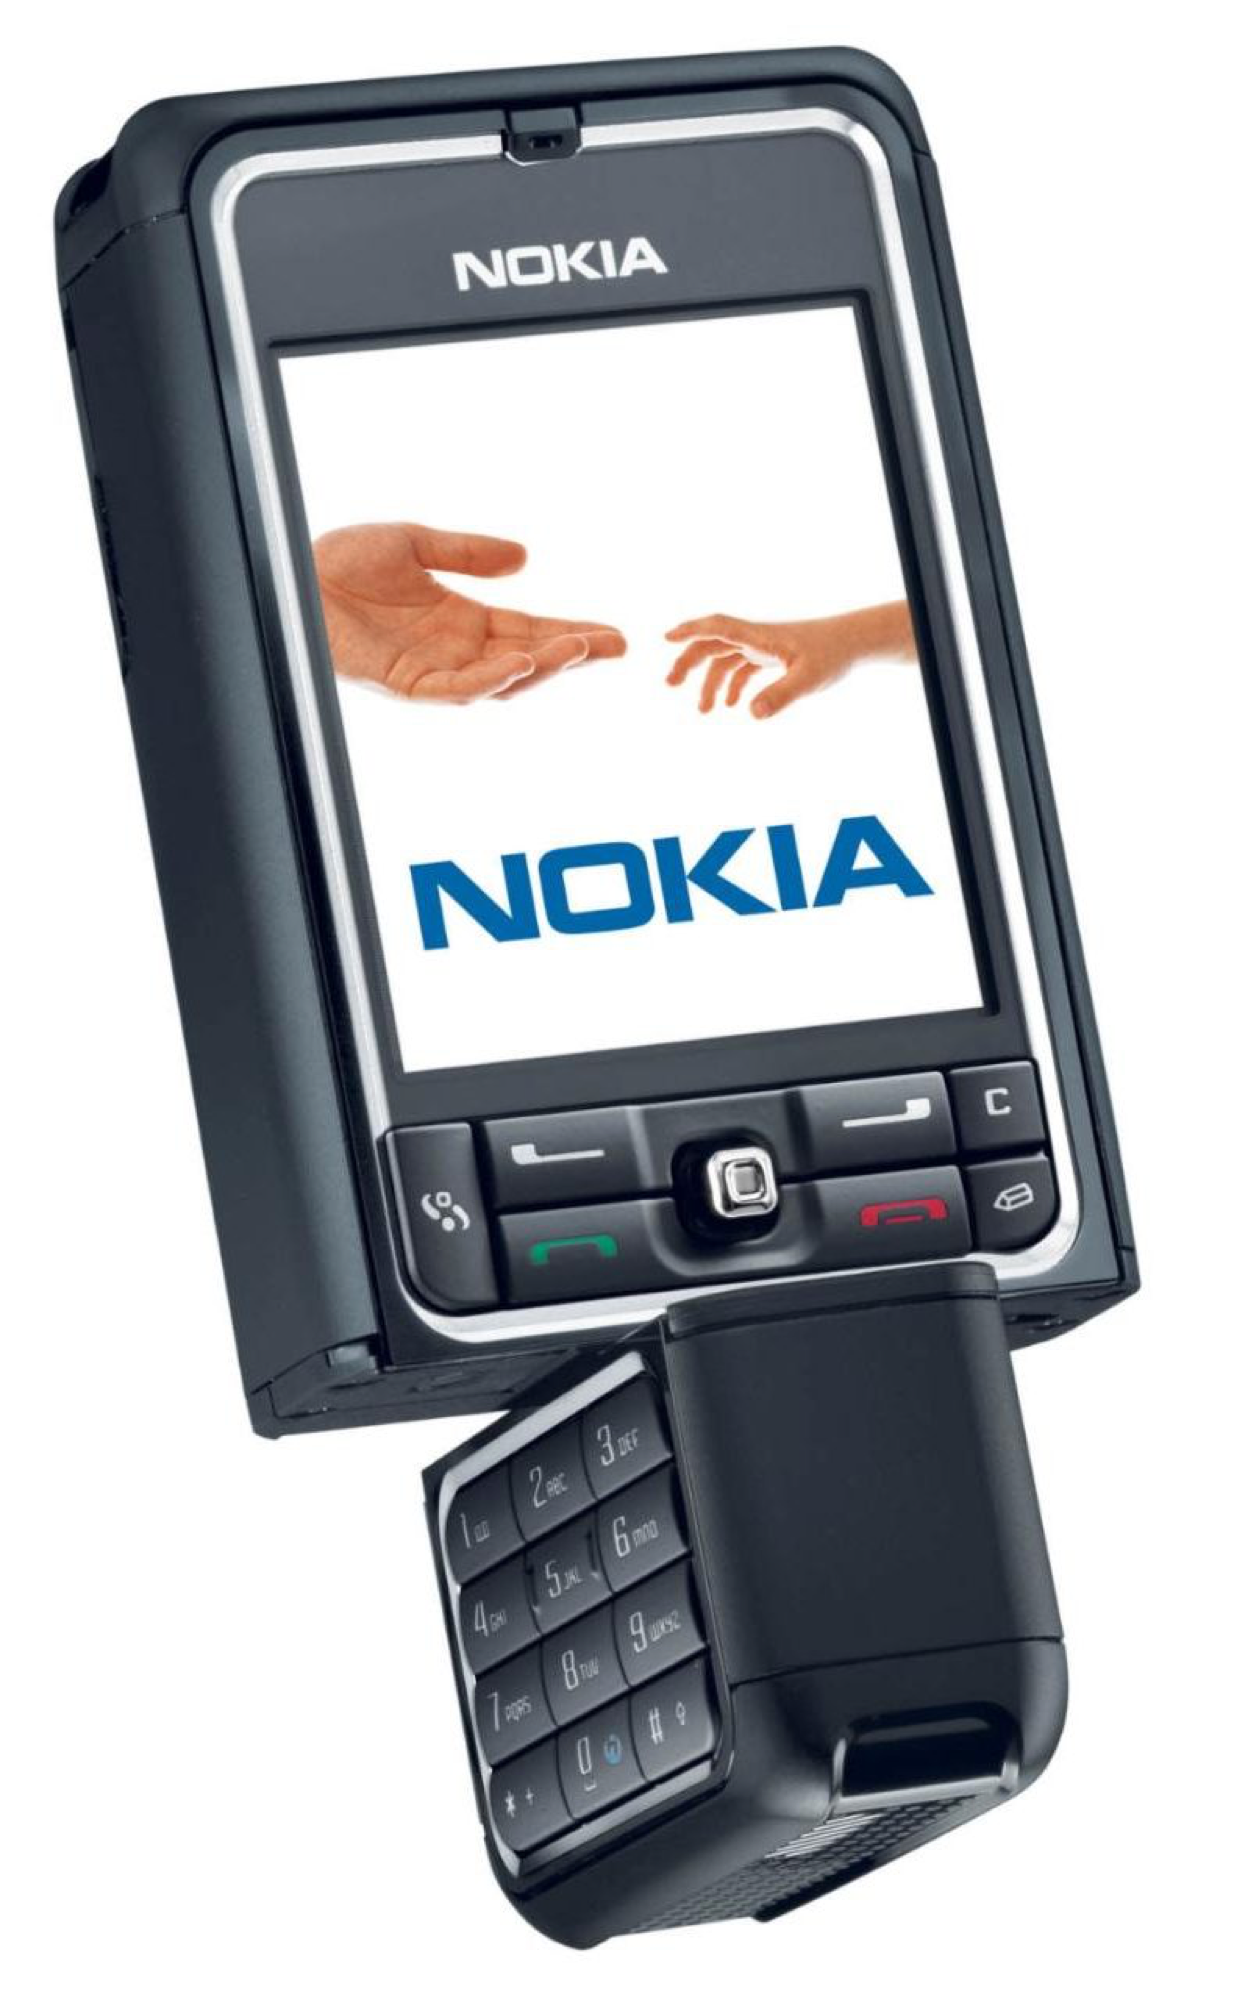 诺基亚702T_(Nokia)诺基亚702T报价、参数、图片、怎么样_太平洋产品报价